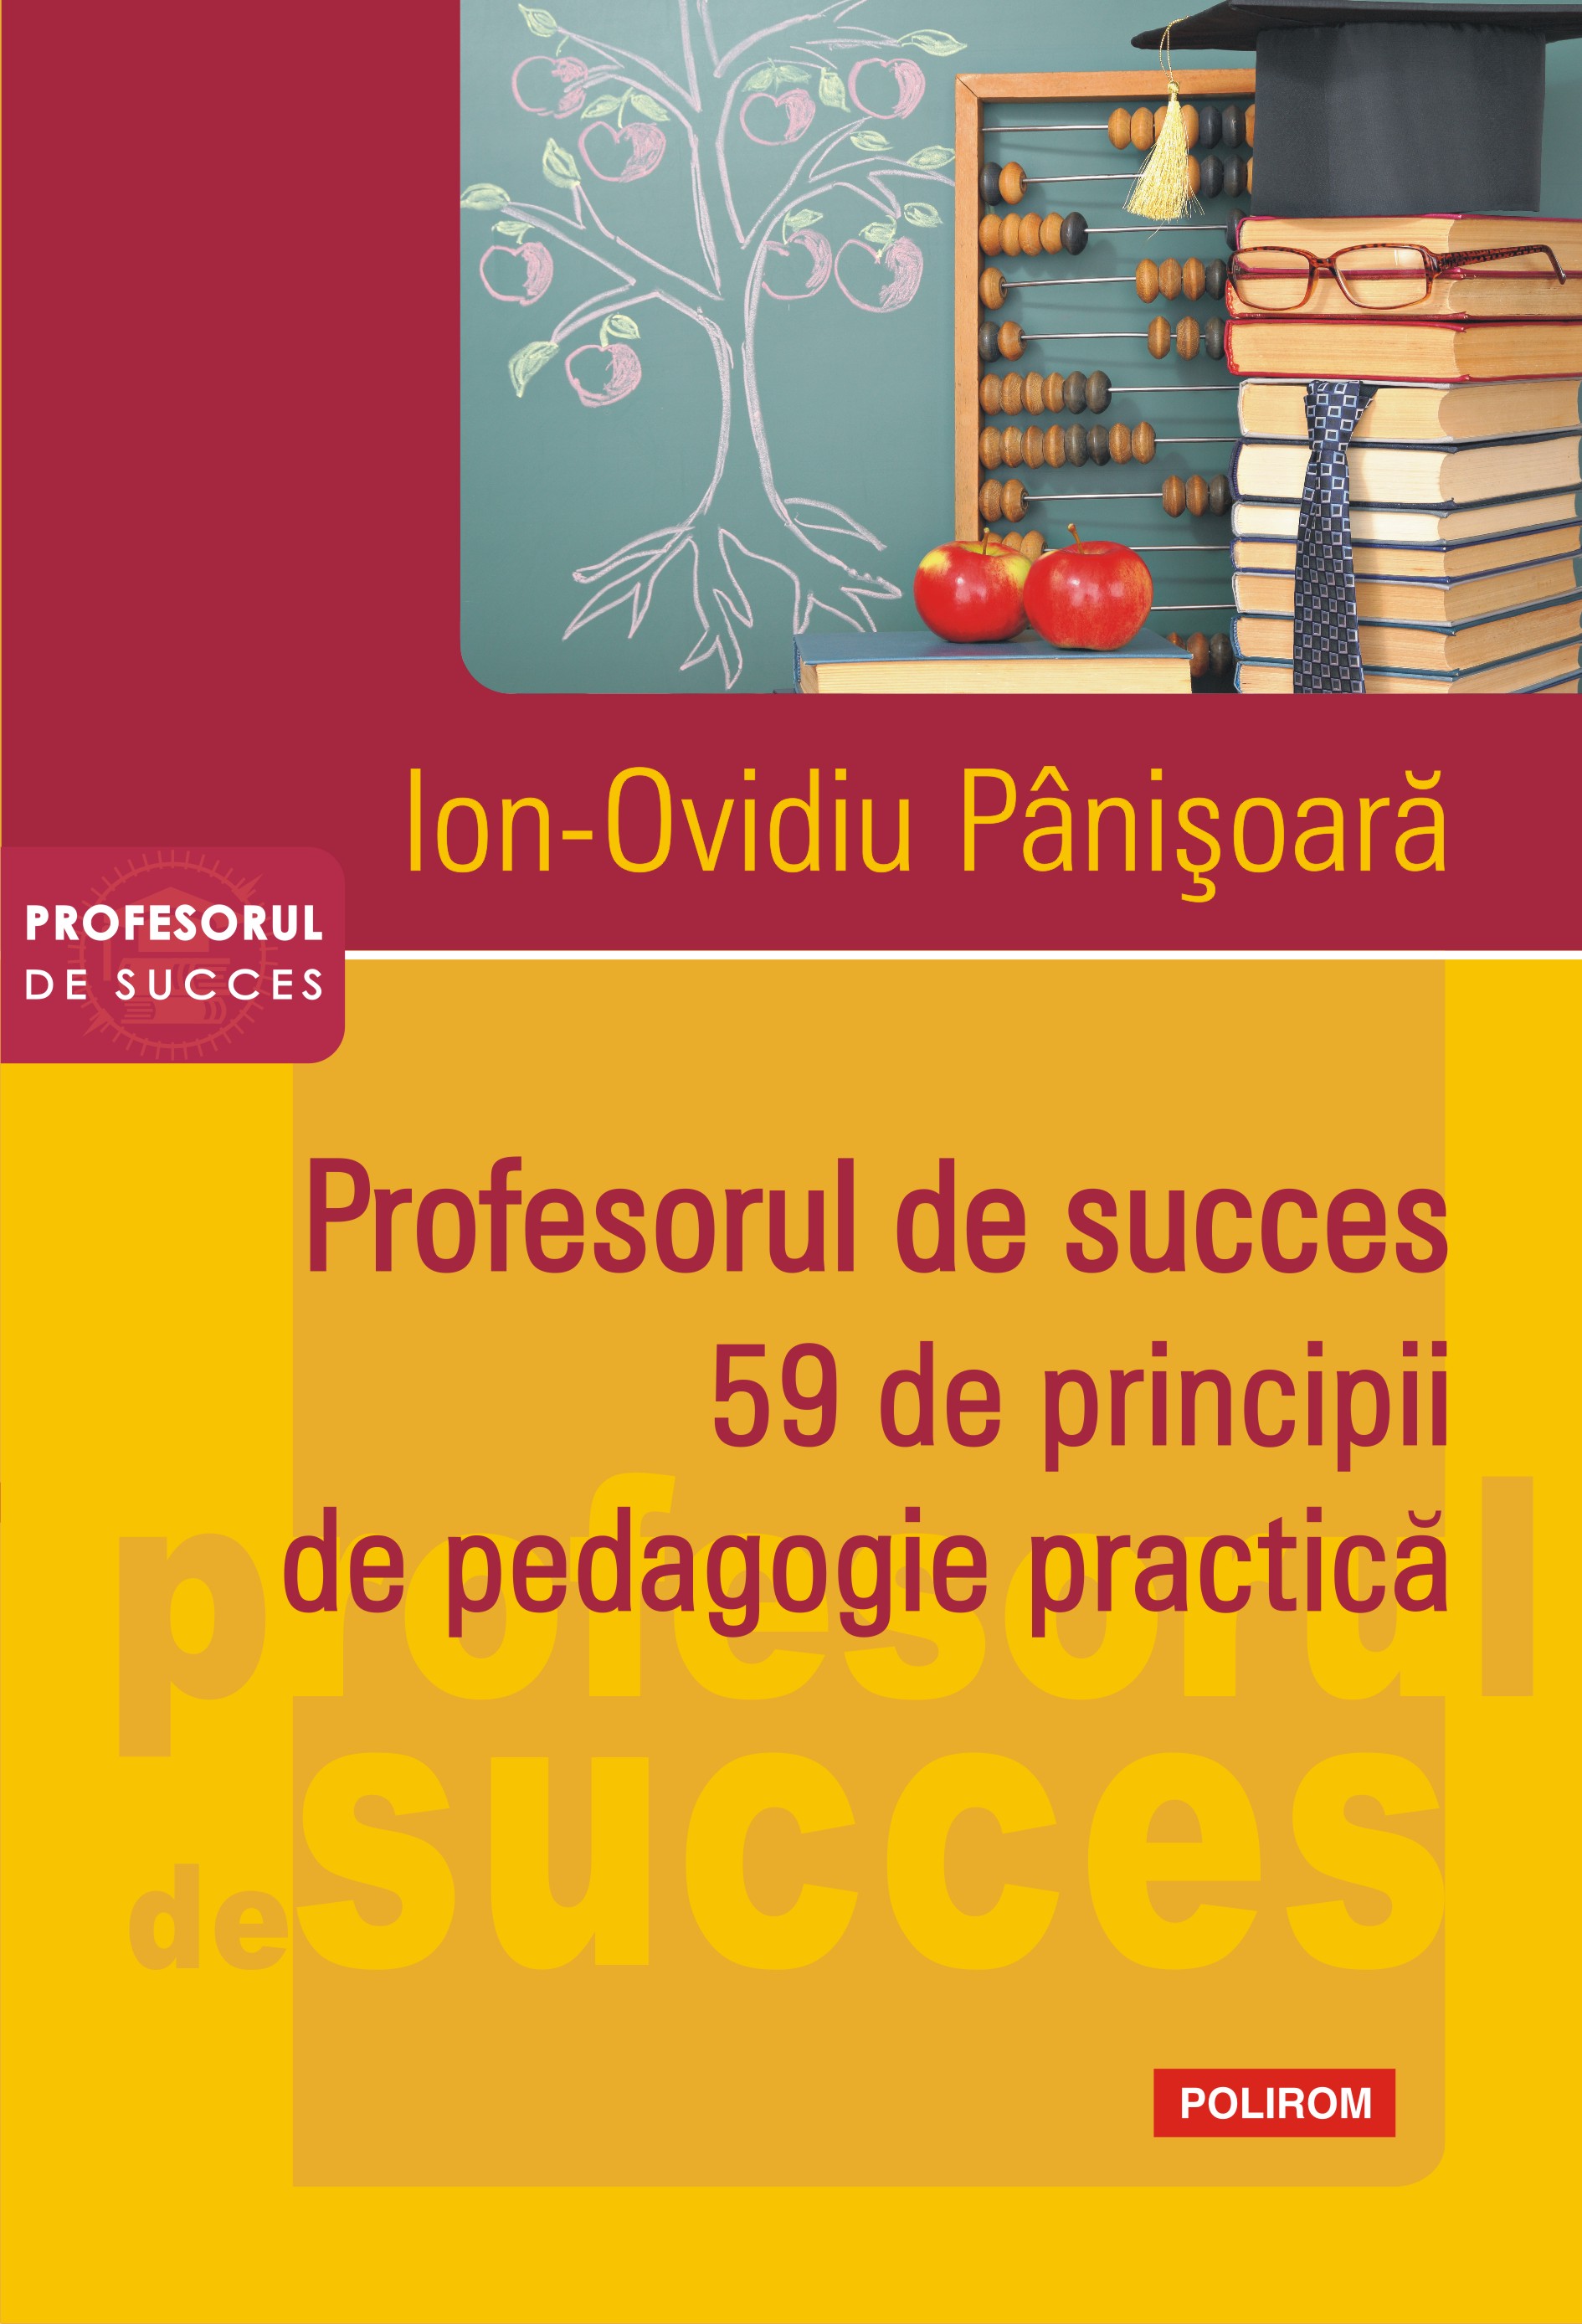 eBook Profesorul de succes. 59 de principii de pedagogie practica - Ion-Ovidiu Panisoara